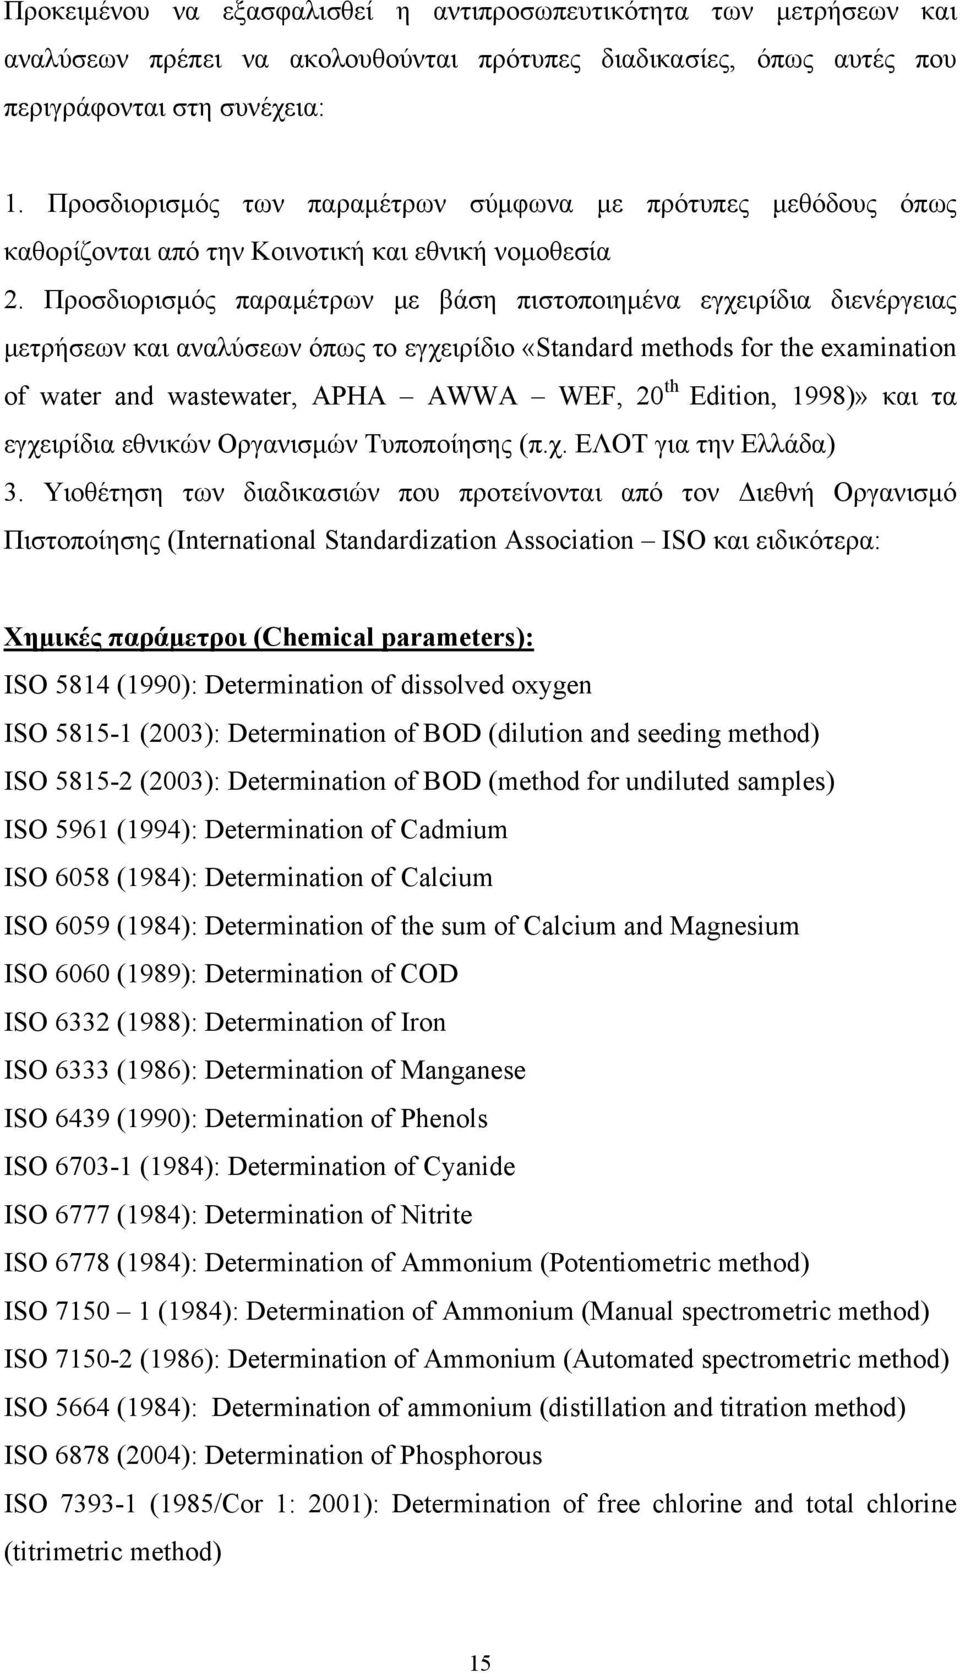 Προσδιορισμός παραμέτρων με βάση πιστοποιημένα εγχειρίδια διενέργειας μετρήσεων και αναλύσεων όπως το εγχειρίδιο «Standard methods for the examination of water and wastewater, APHA AWWA WEF, 20 th